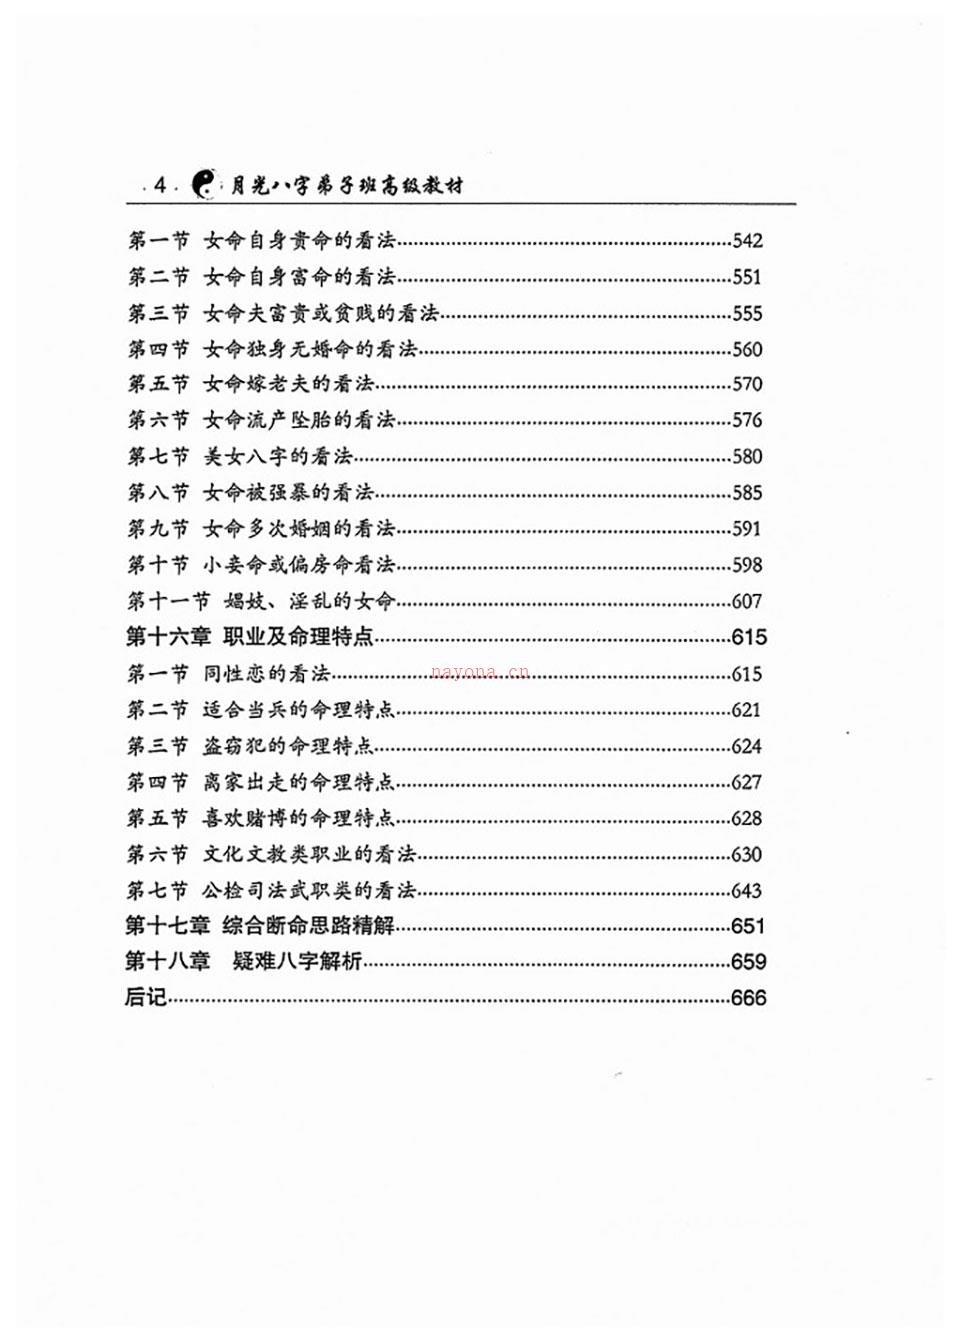 王君凌着《月光八字弟子班高级教材》上下册PDF 百度网盘资源